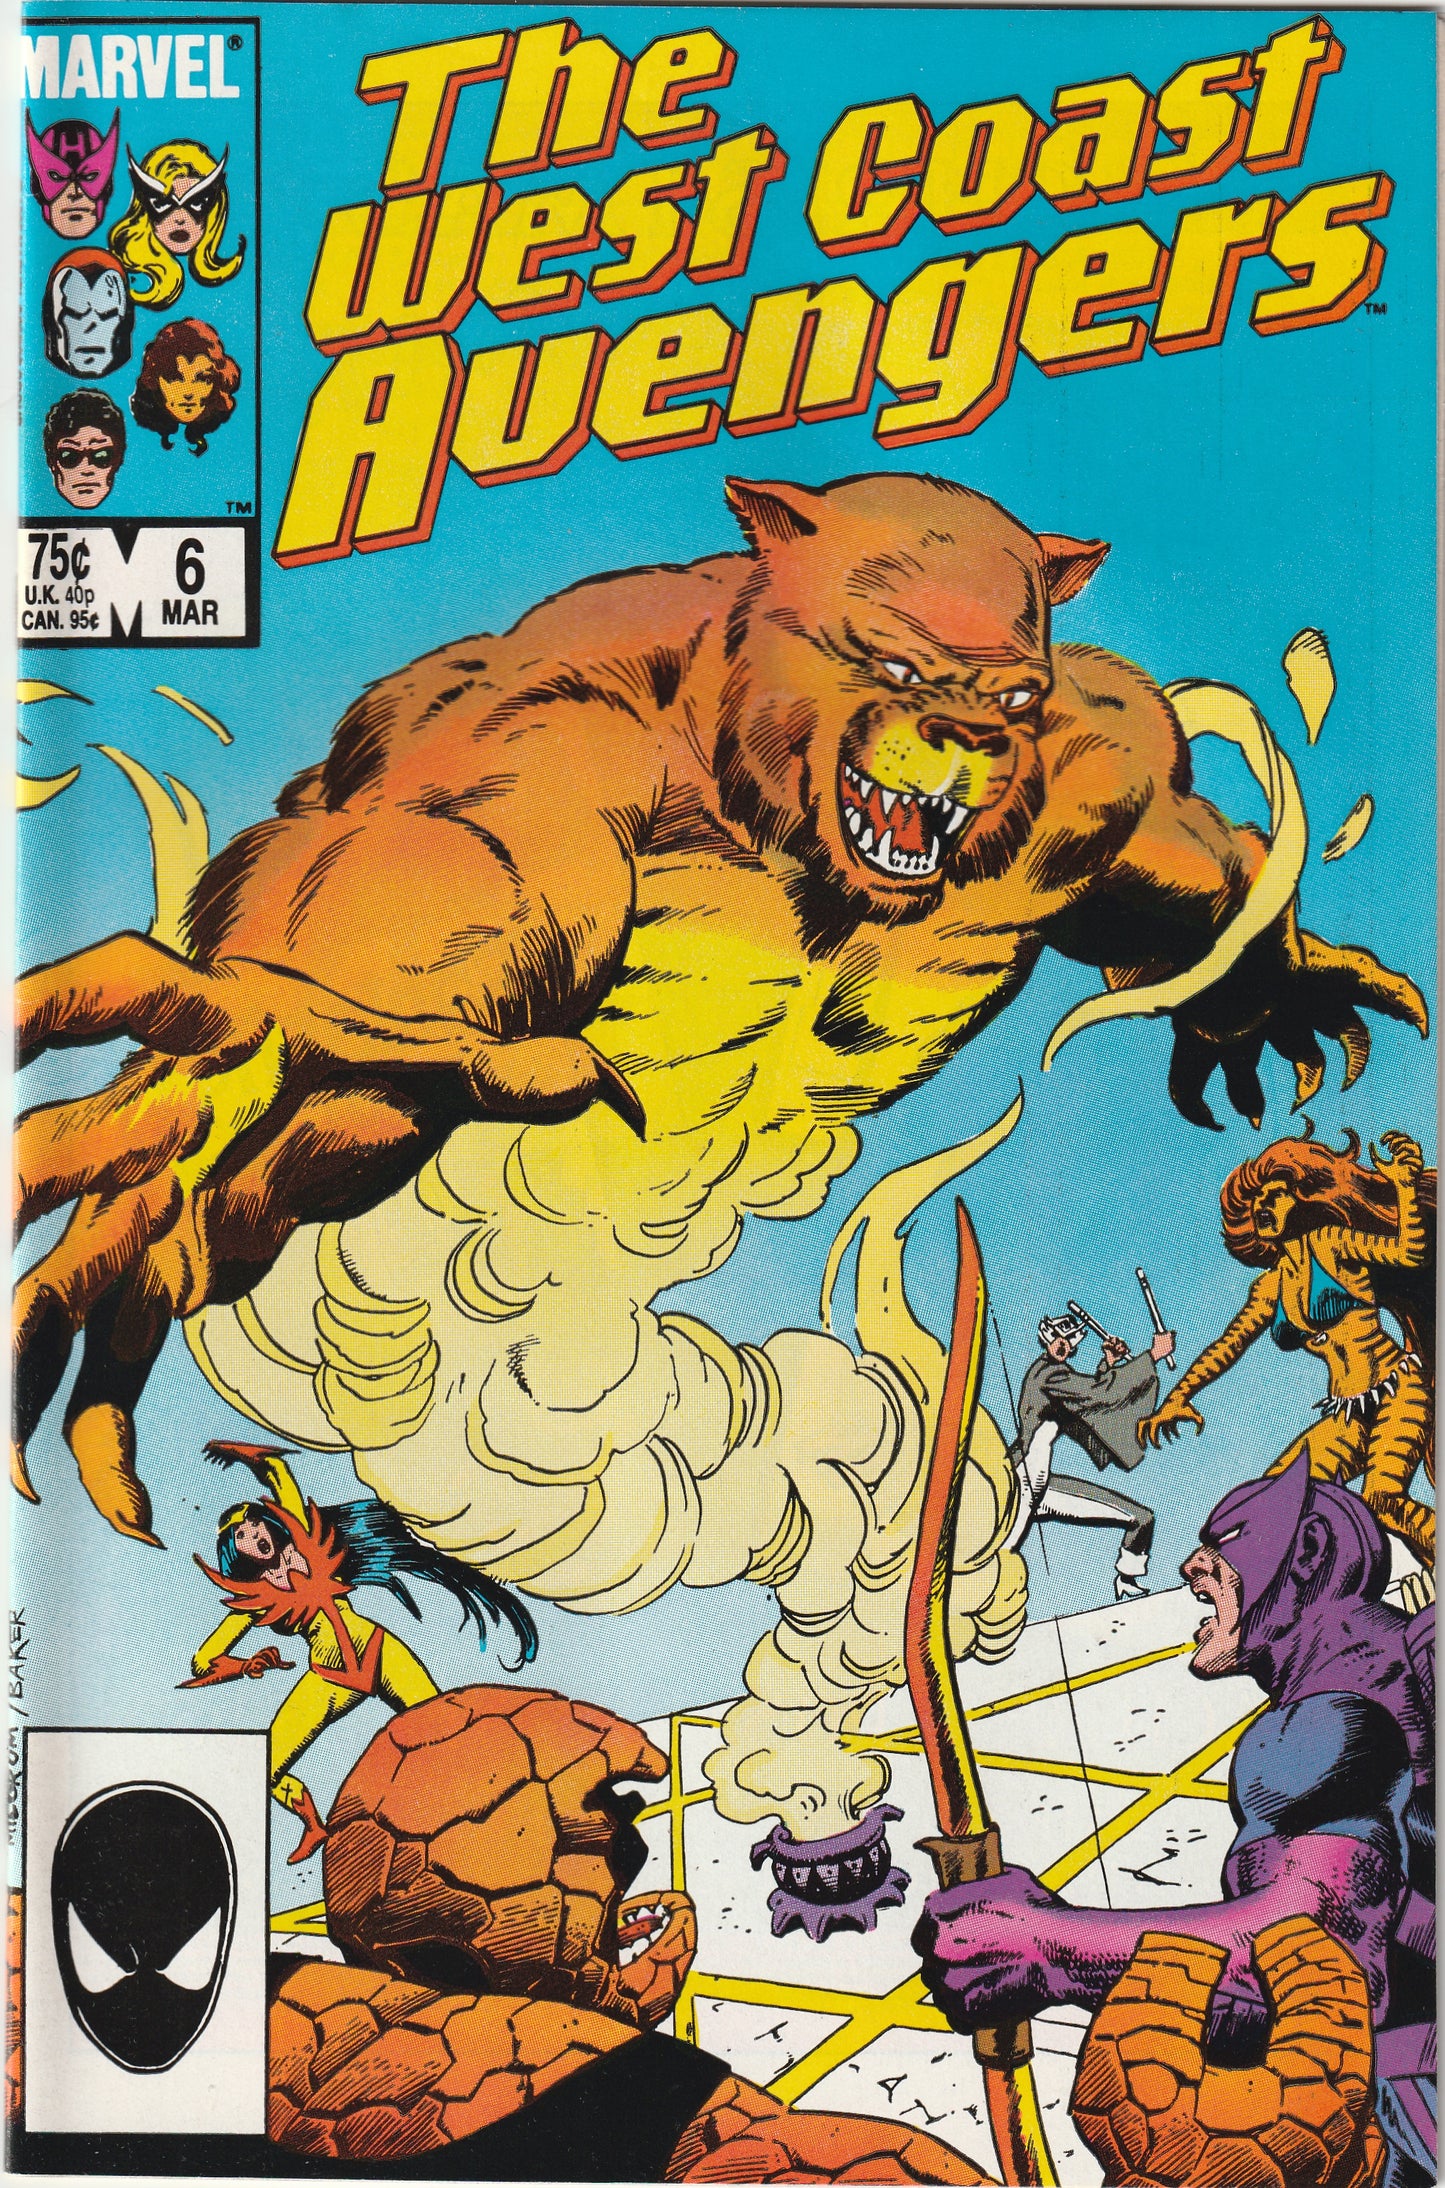 West Coast Avengers #6 (1986)